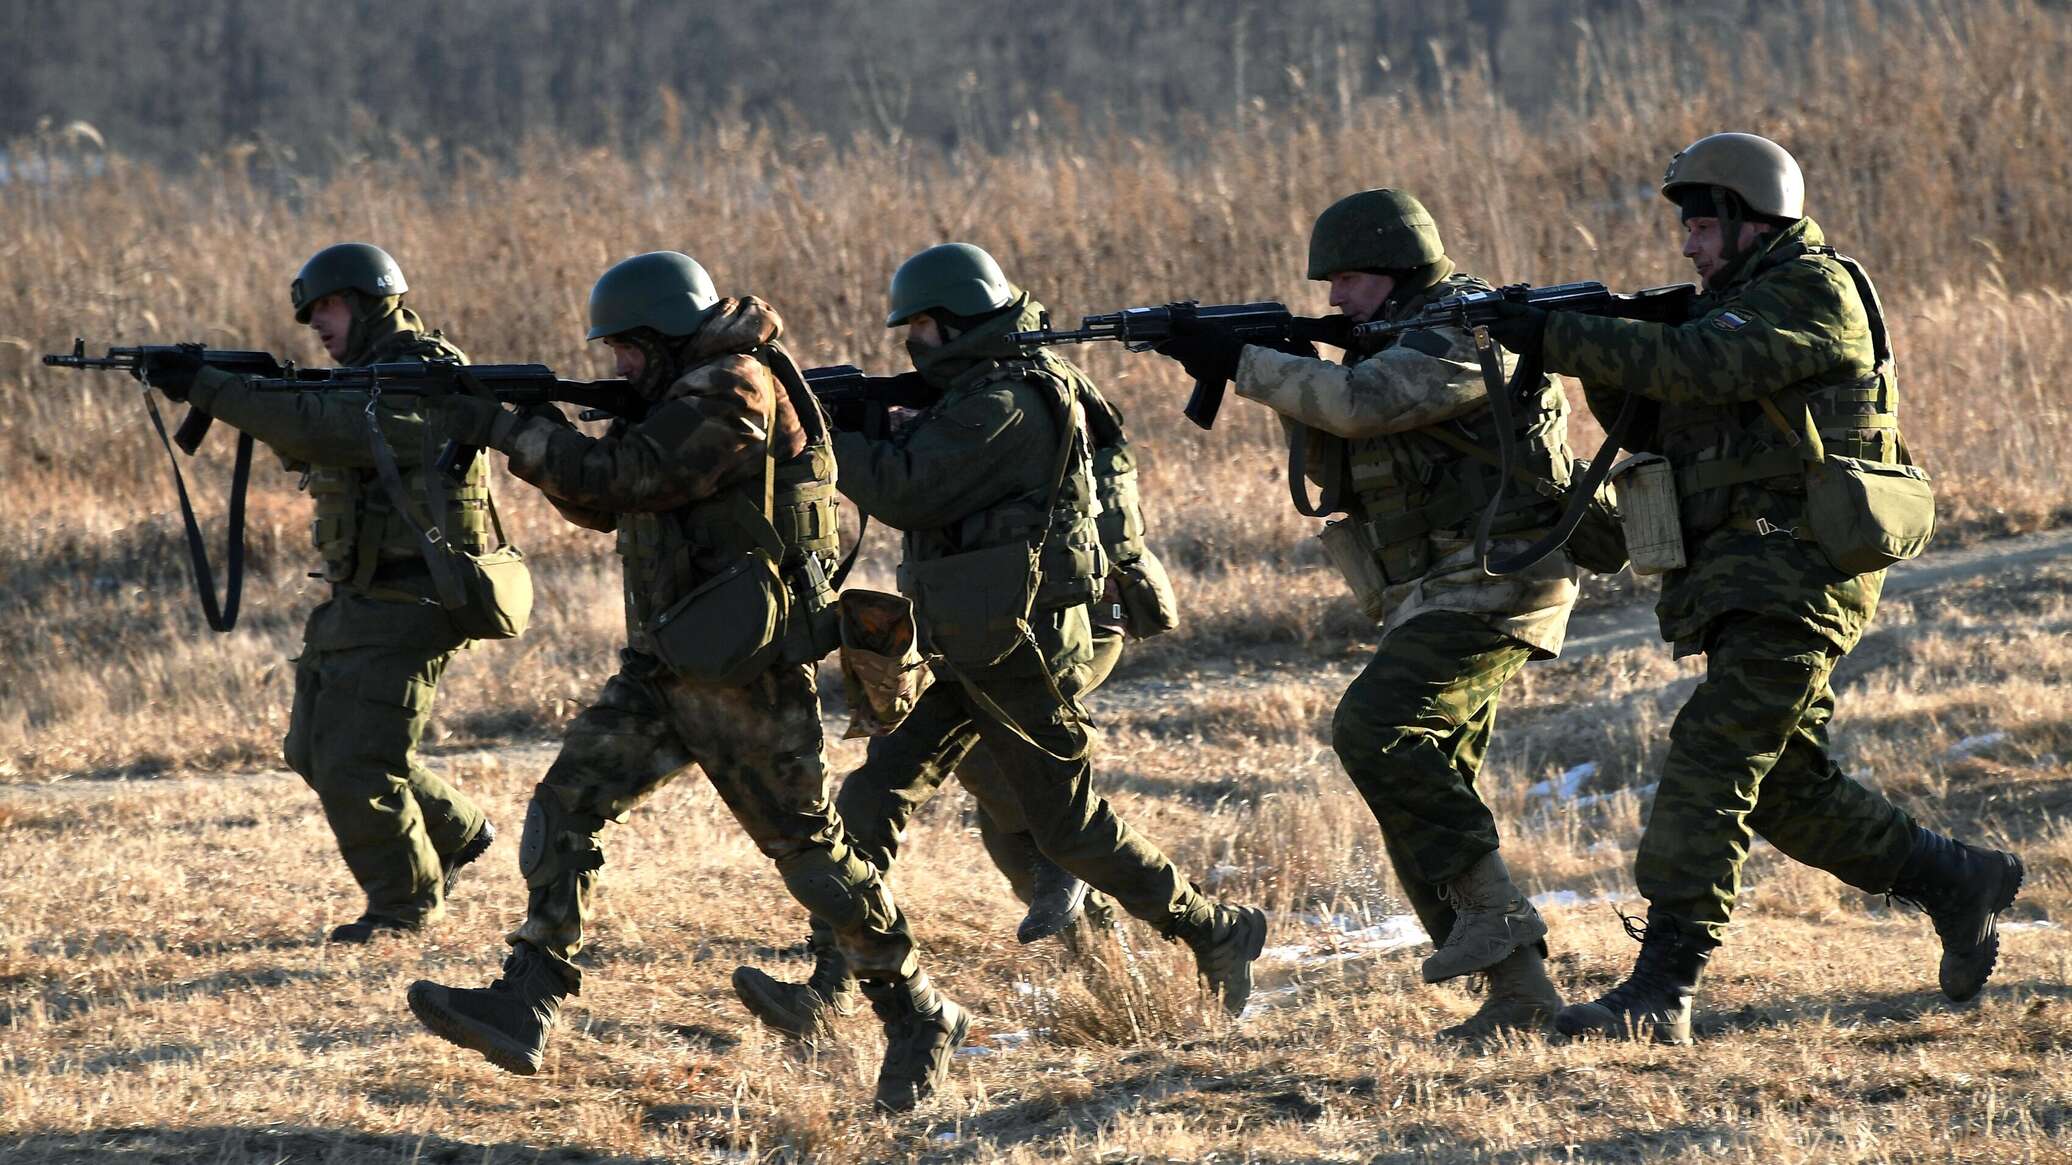 ضابط أمريكي: روسيا تنتصر في ساحة المعركة وخصوصا في أوديسا